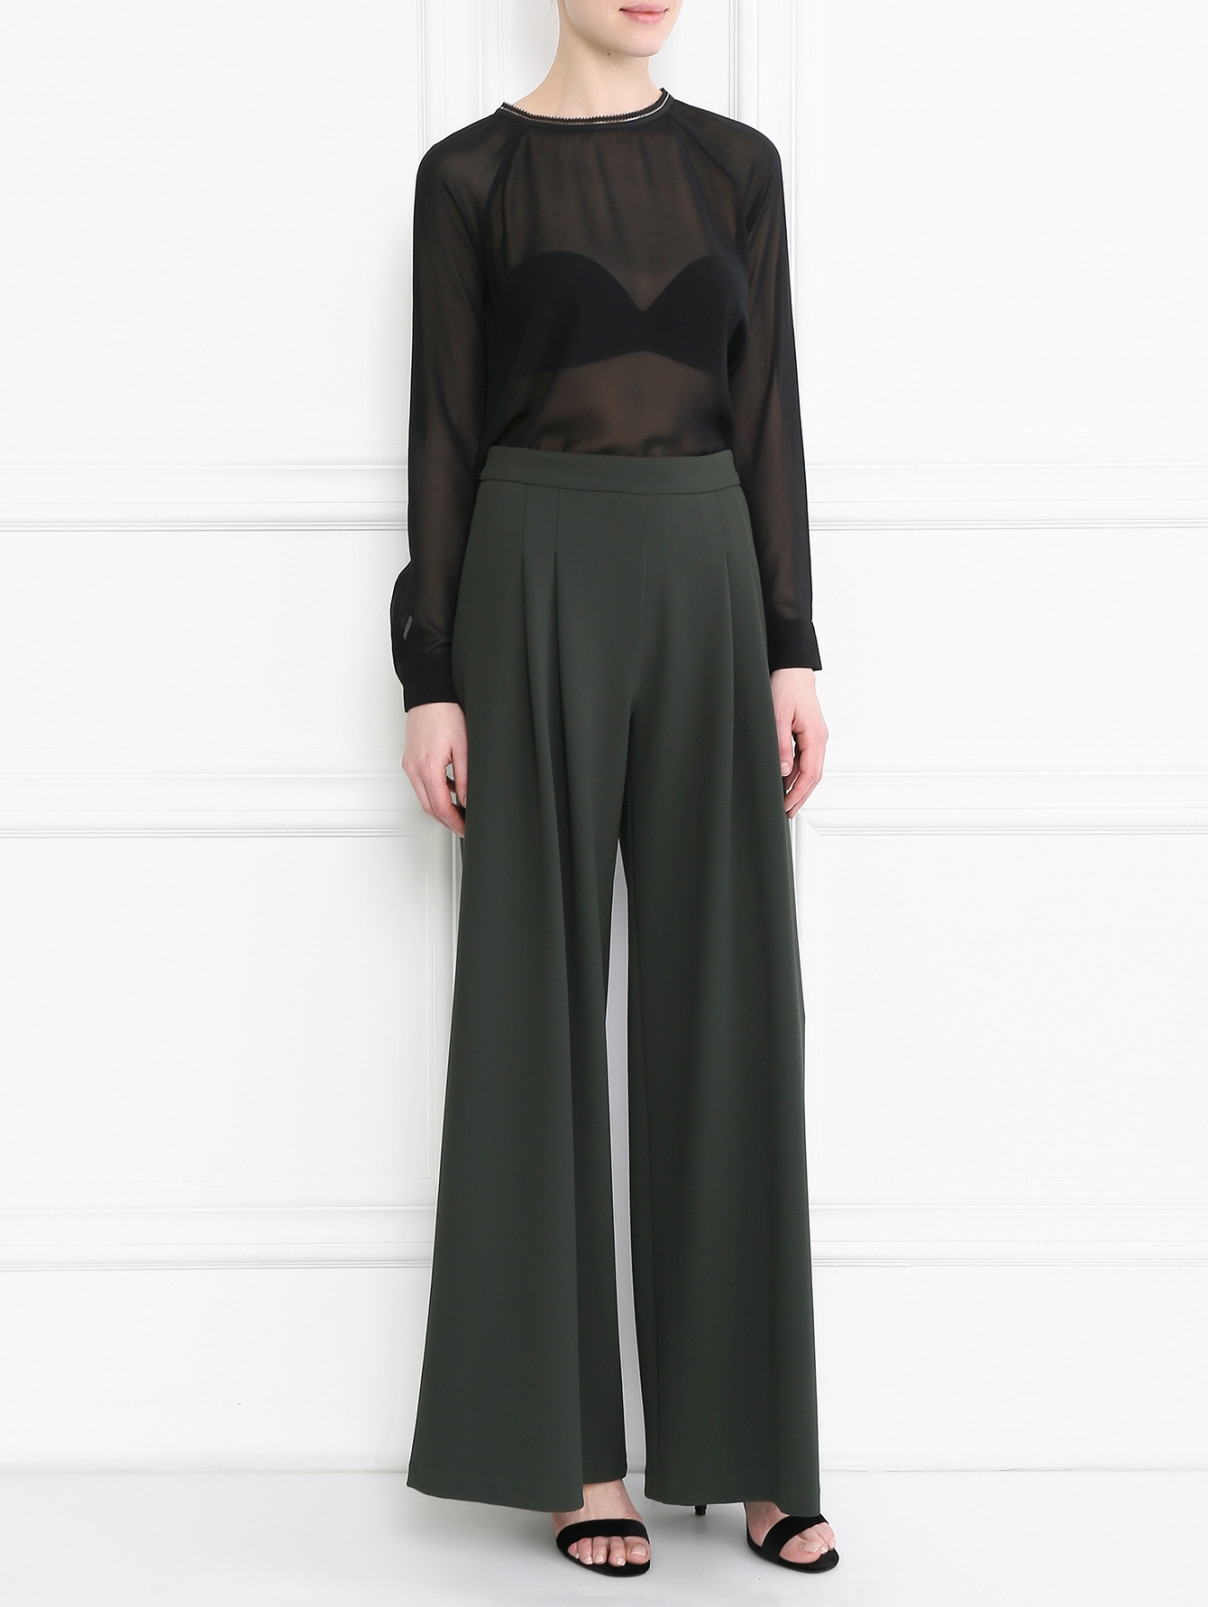 Блуза с плиссировкой на спине Rich&Royal  –  Модель Общий вид  – Цвет:  Черный